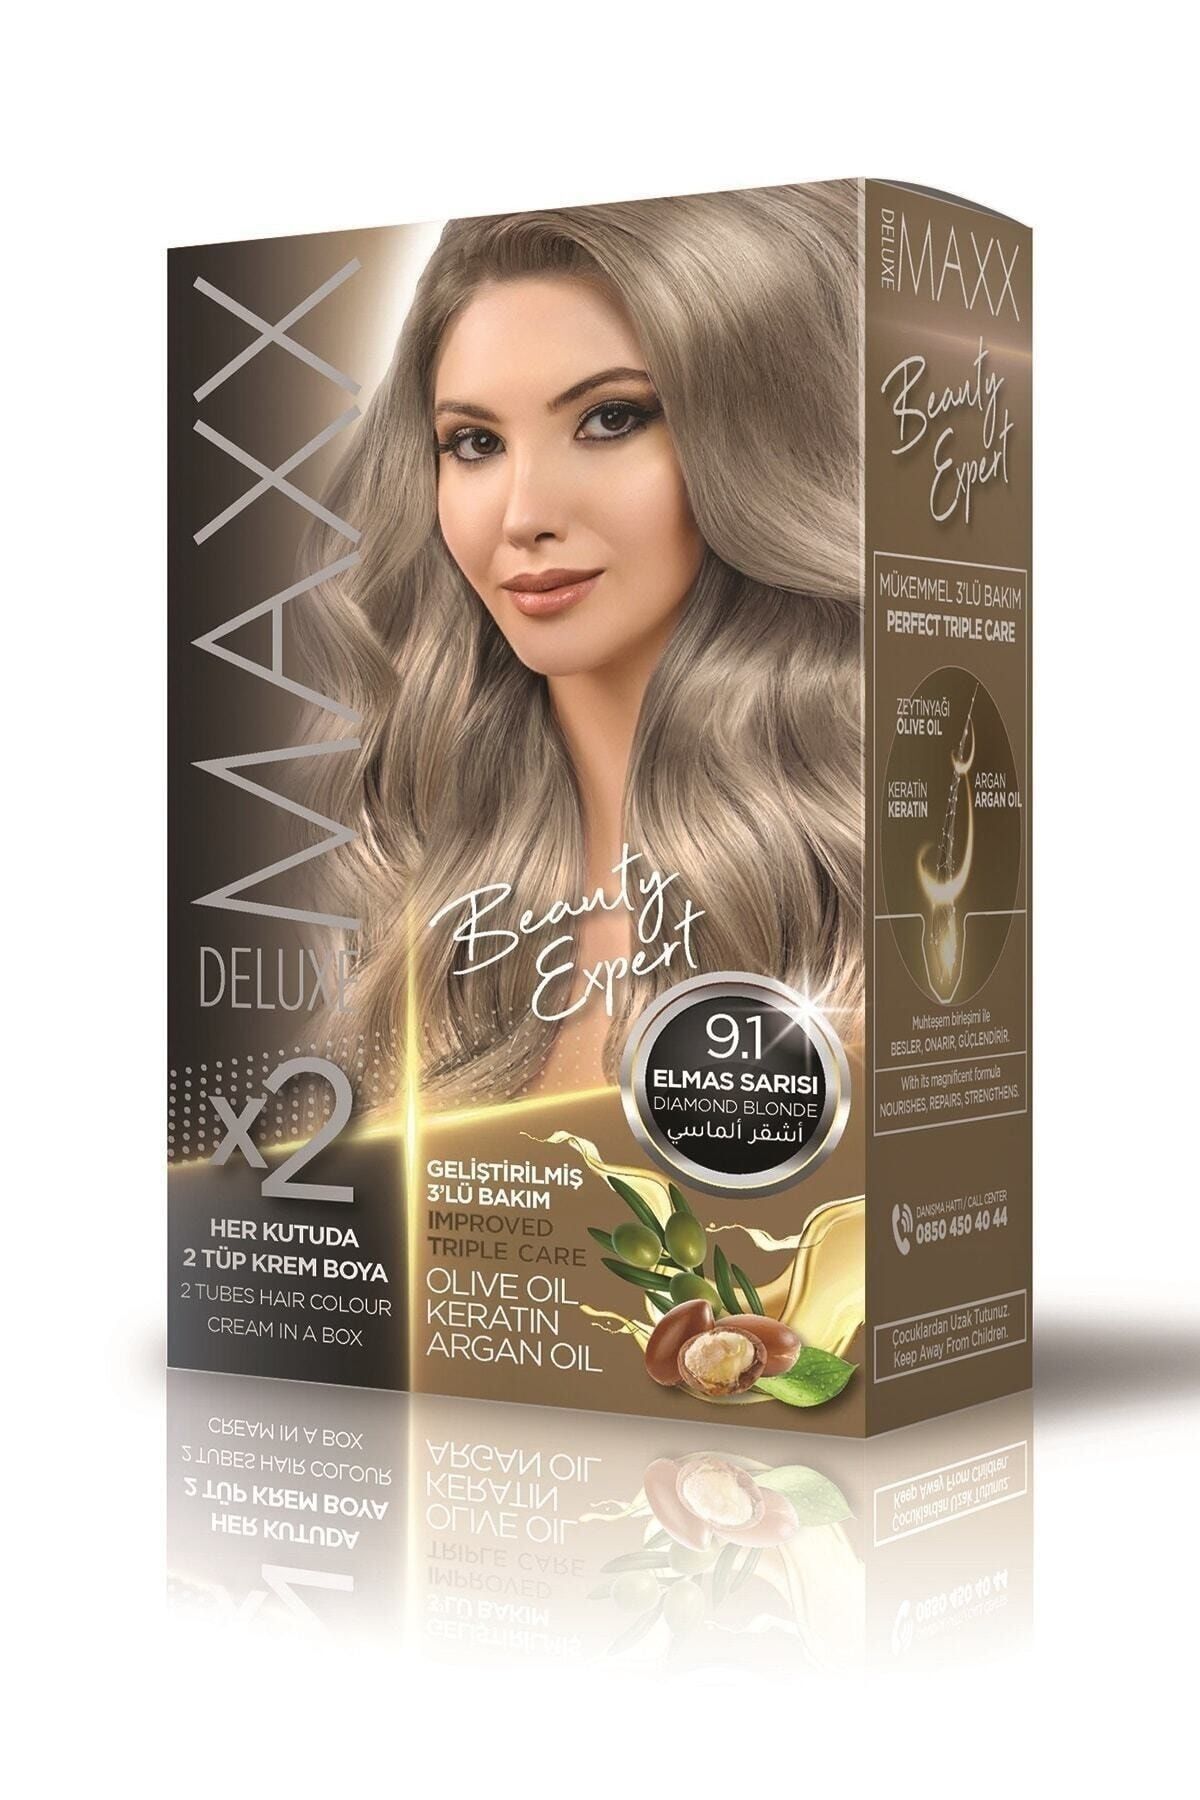 MAXX DELUXE Beauty Expert 9.1 Elmas Sarısı Set Boya